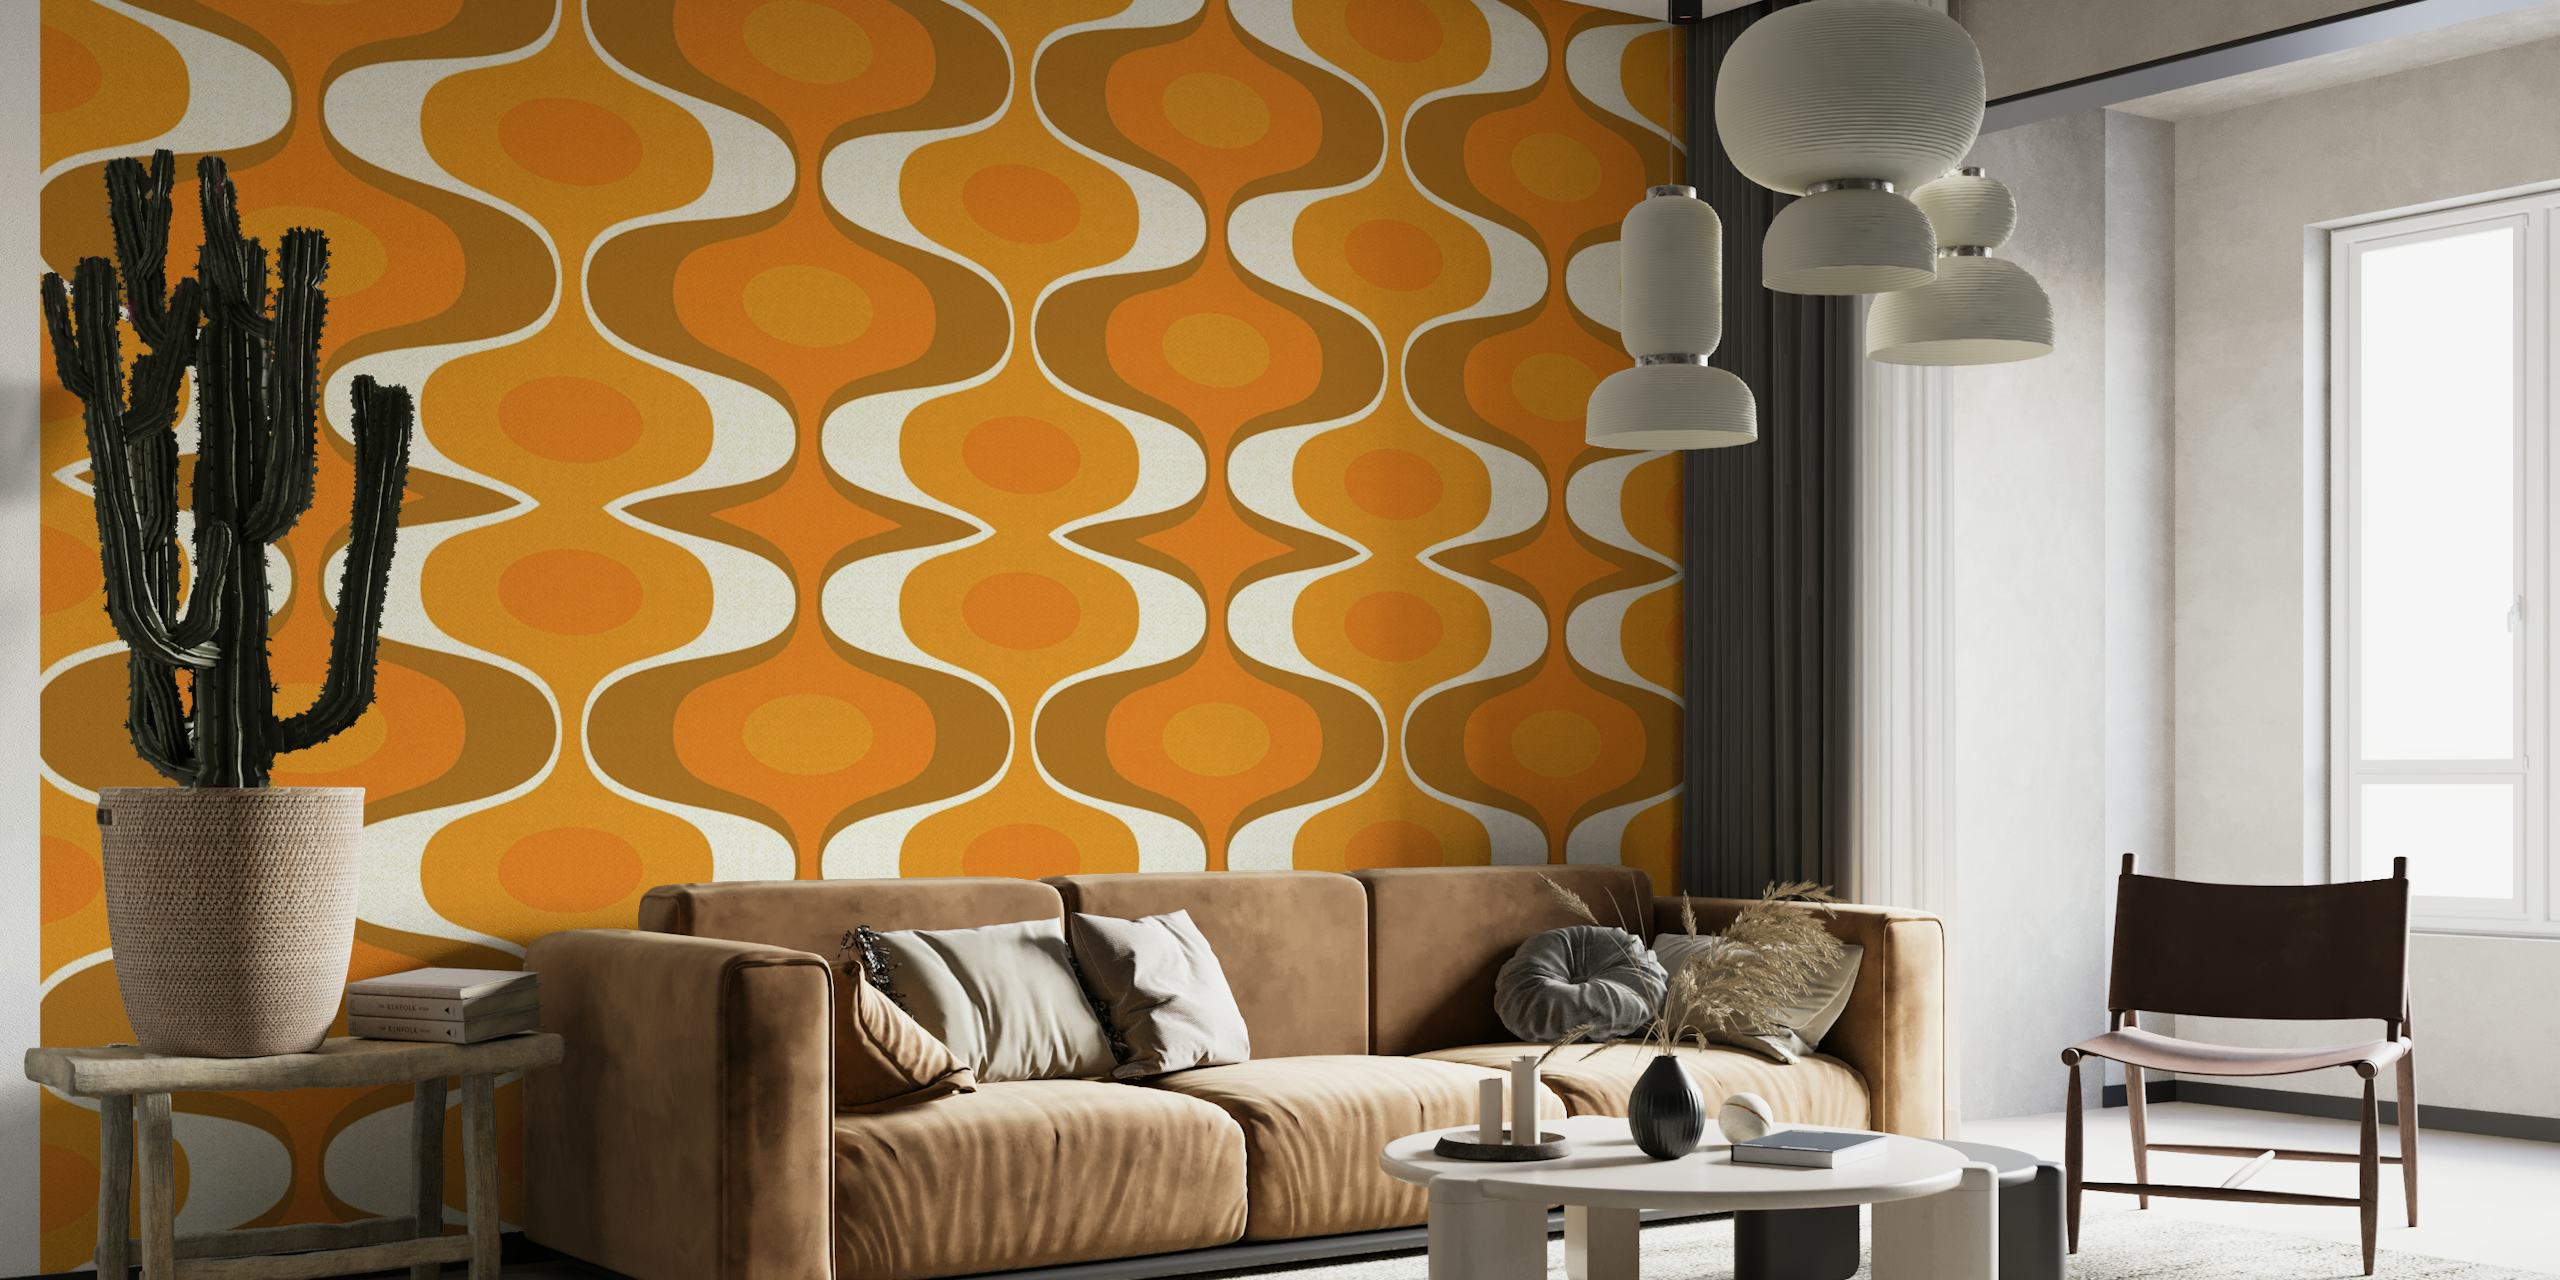 Vægmaleri med geometrisk mønster med orange og jordfarver, der afspejler 70'ernes retrostil